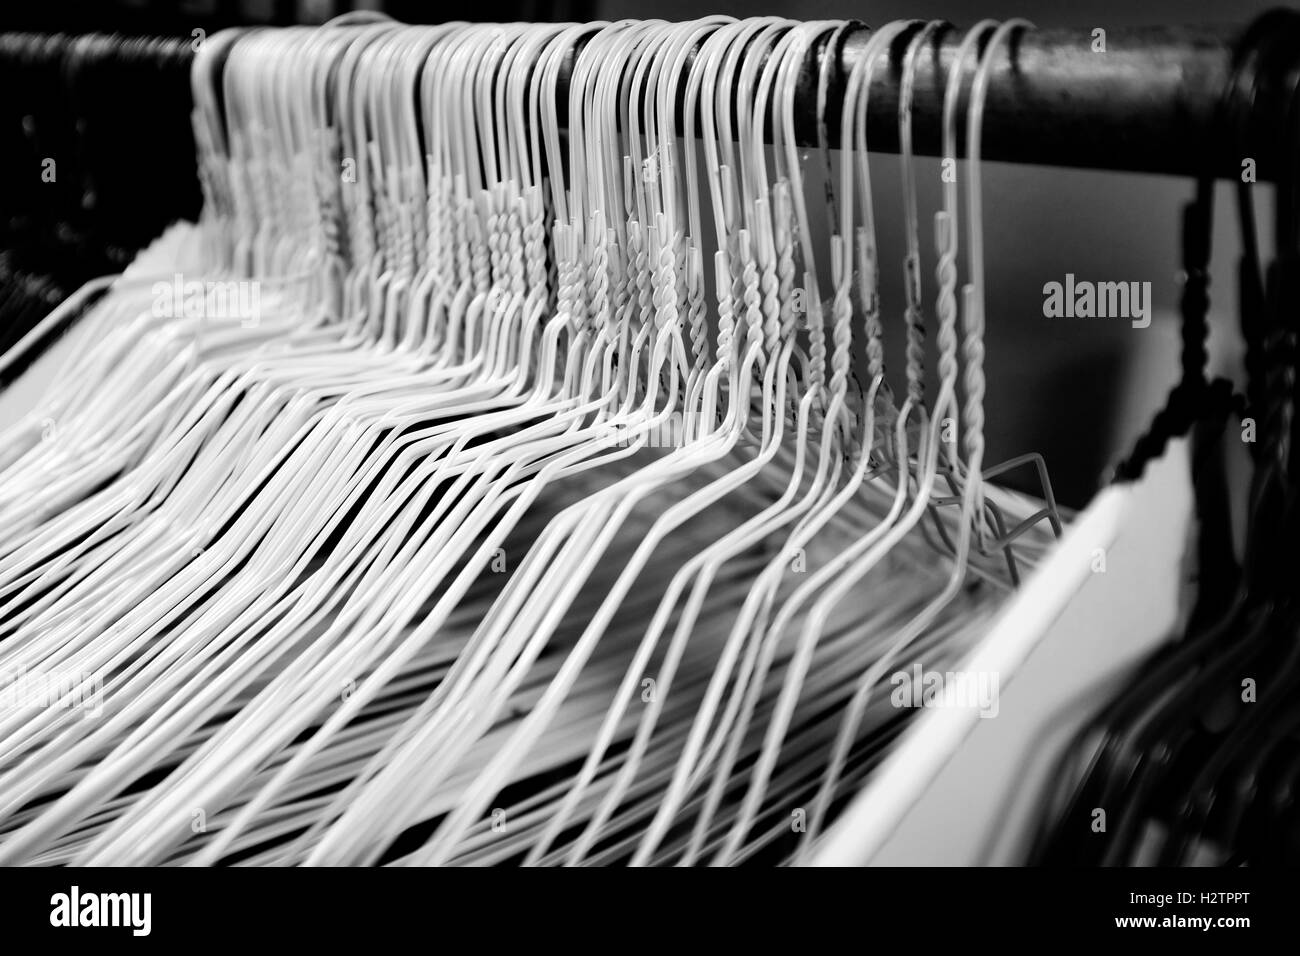 Molti diversi filo metallico appendiabiti in pole per appendere i vestiti in armadio storage Foto Stock